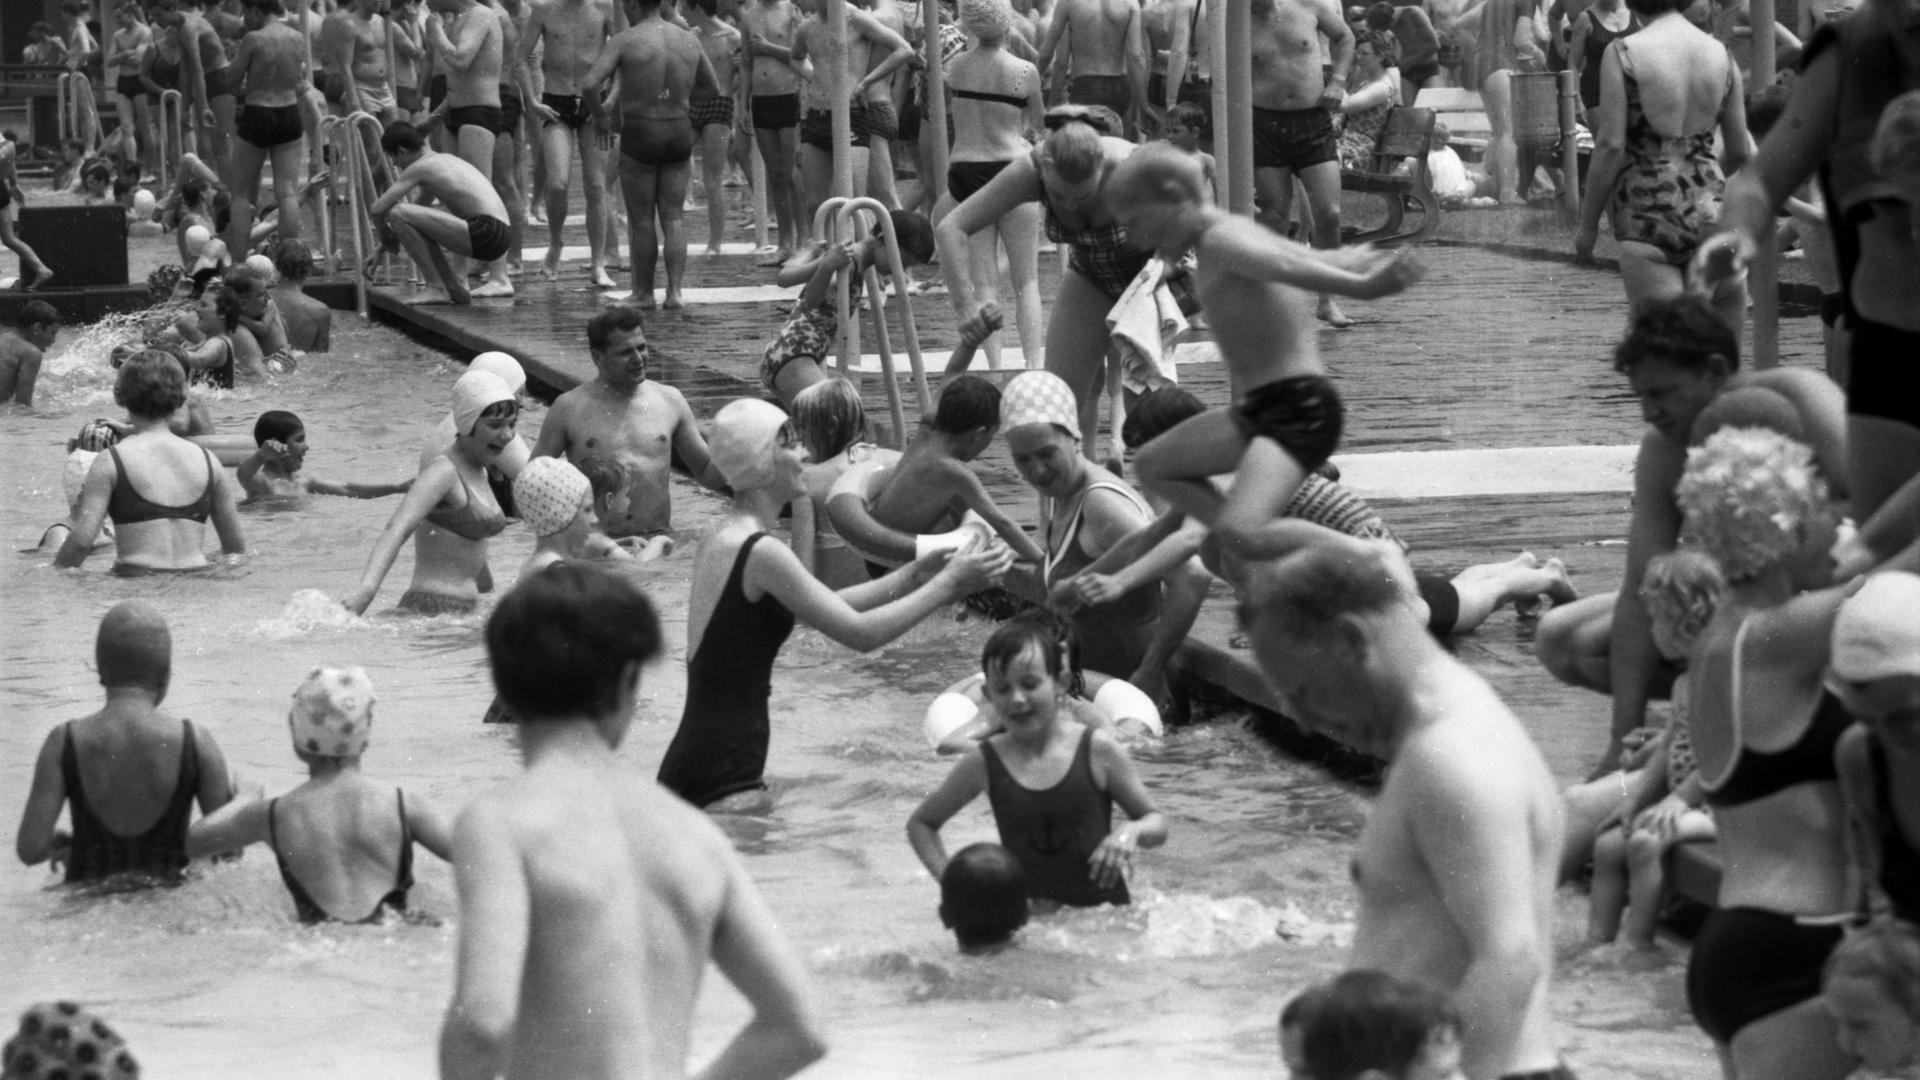 Schwarz-weiß Foto: Viele Menschen im Freibad, das Becken ist voll.